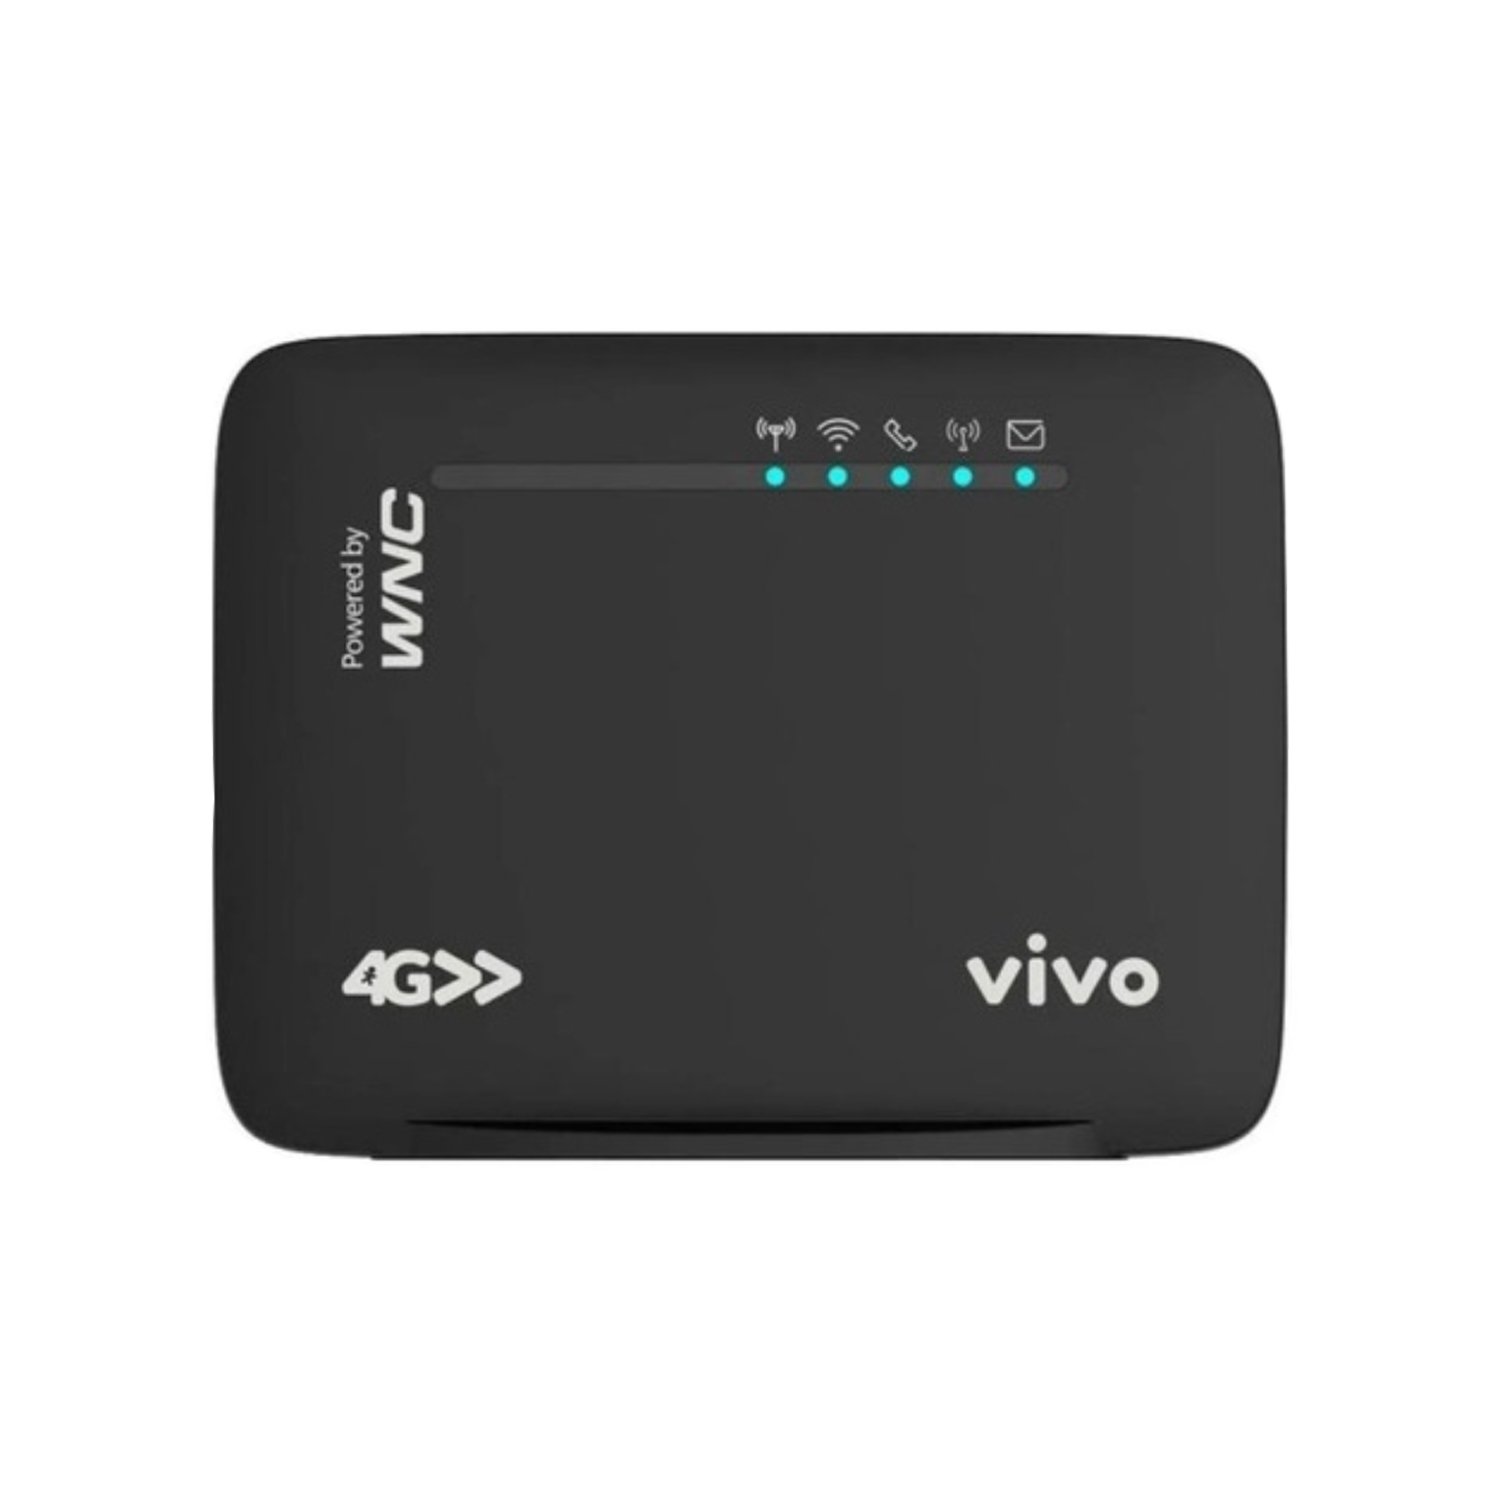 Modem Roteador Wi-fi Wld71-t5a Vivo Box 4g 3g Desbloqueado - 6